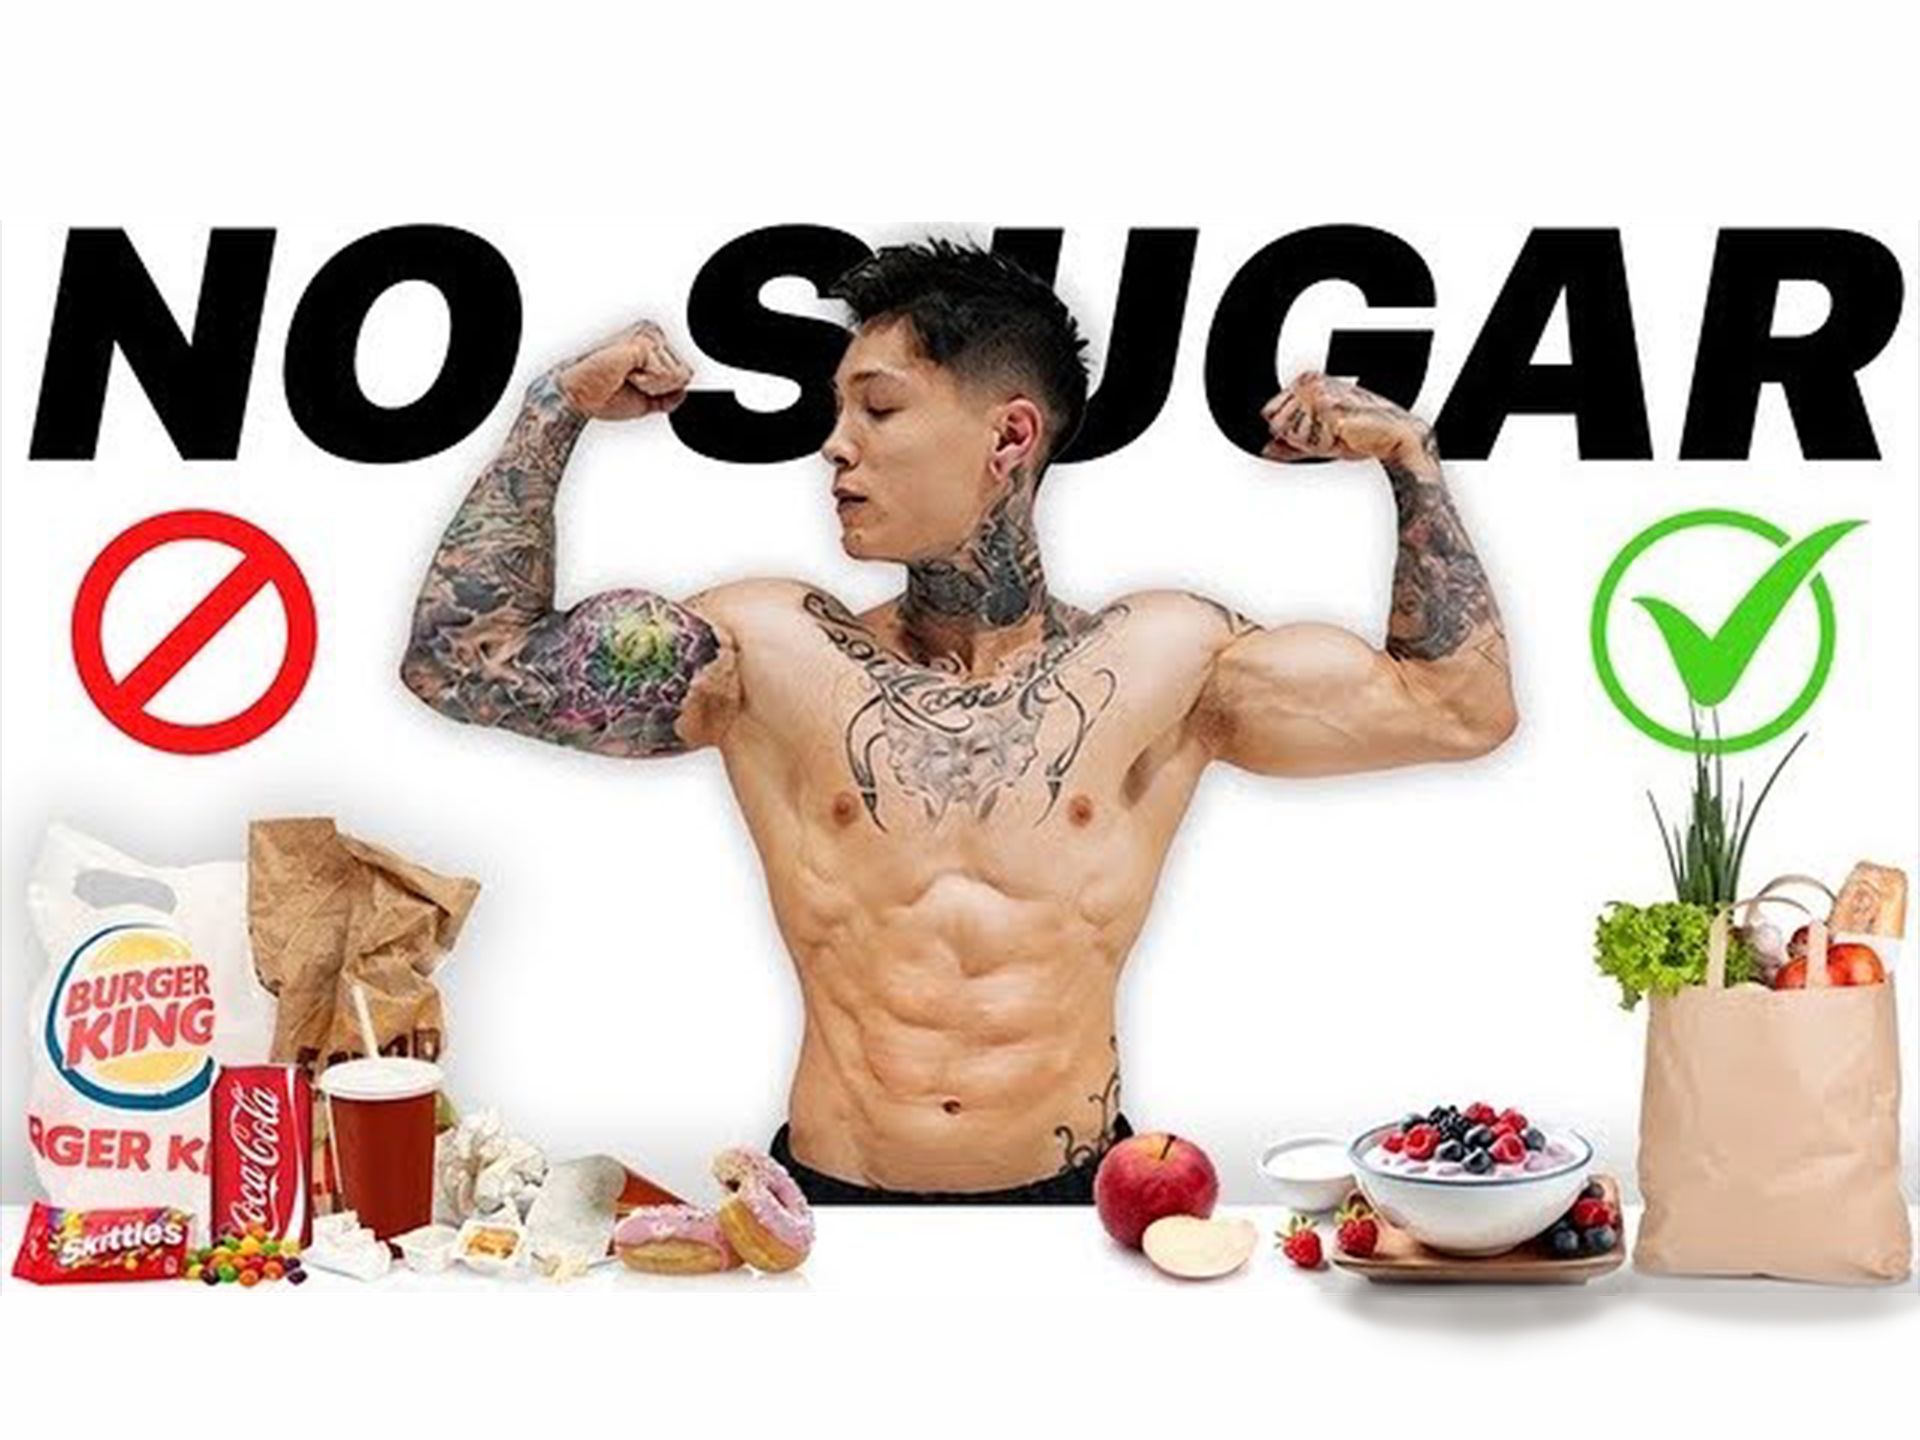 克里斯 - 当你停止吃糖，你的身体会发生什么变化？